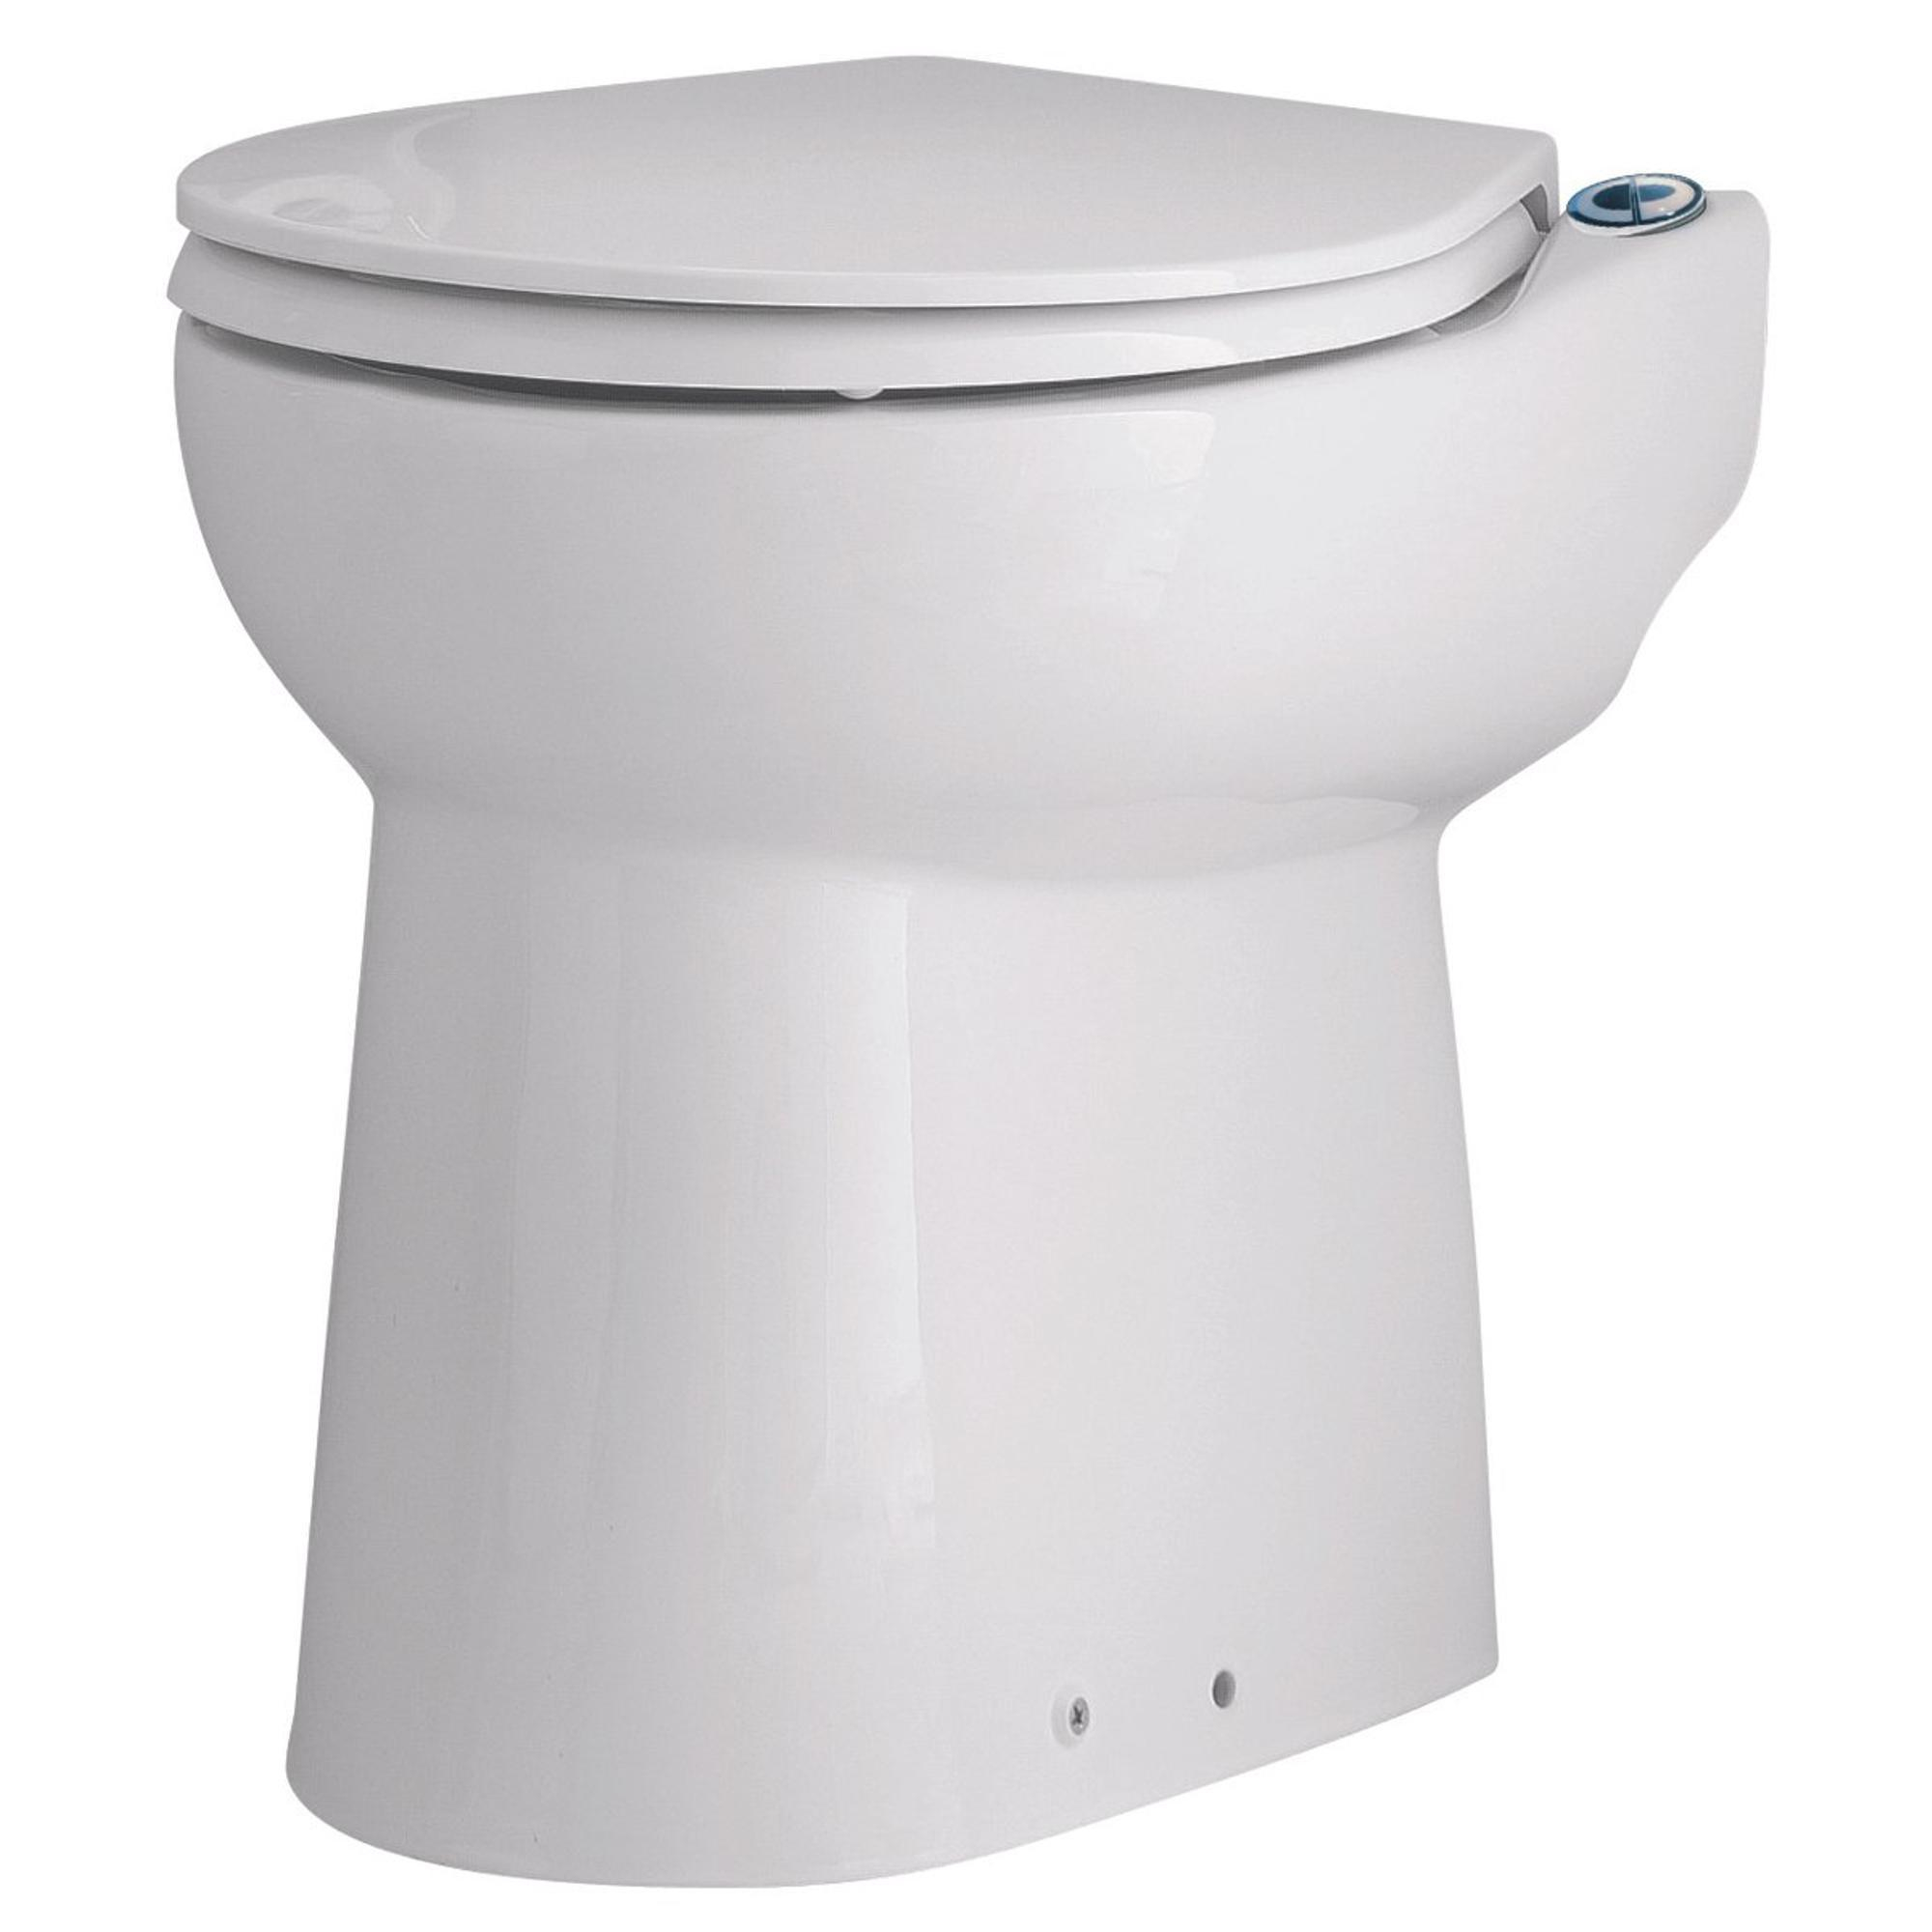 Sanibroyeur Sanicompact C43 Broyeur sanitaire dans WC sur pied